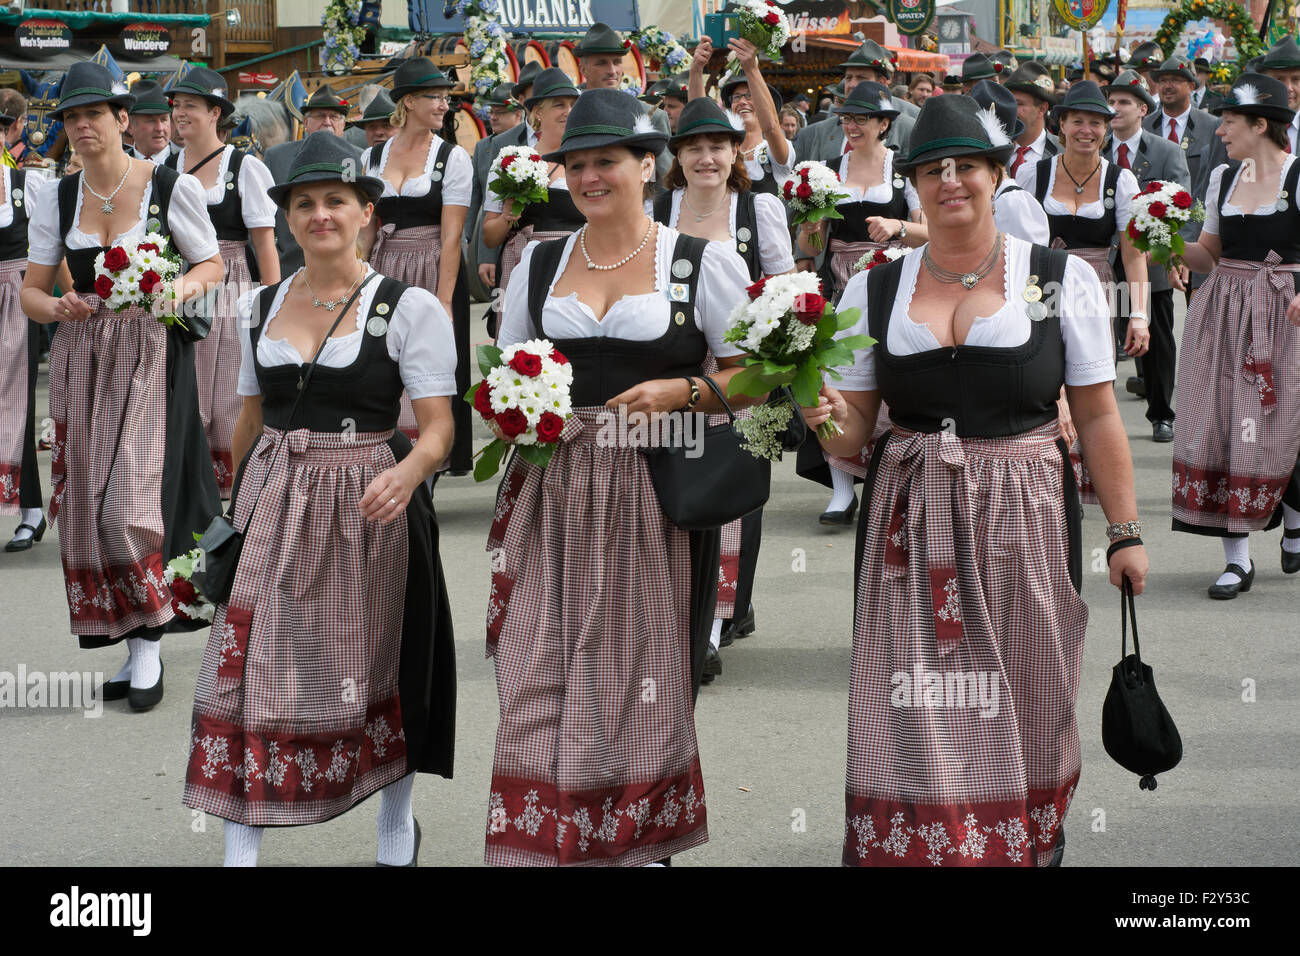 MÜNCHEN, DEUTSCHLAND – SEPT. 20, 2015: traditionelle marschieren Gruppe mit lokalen Kostümen unterhalten Scharen von Besuchern auf dem jährlichen Oktoberfest. Das Festival findet vom 19. September bis 4. Oktober 2015 in München. Stockfoto